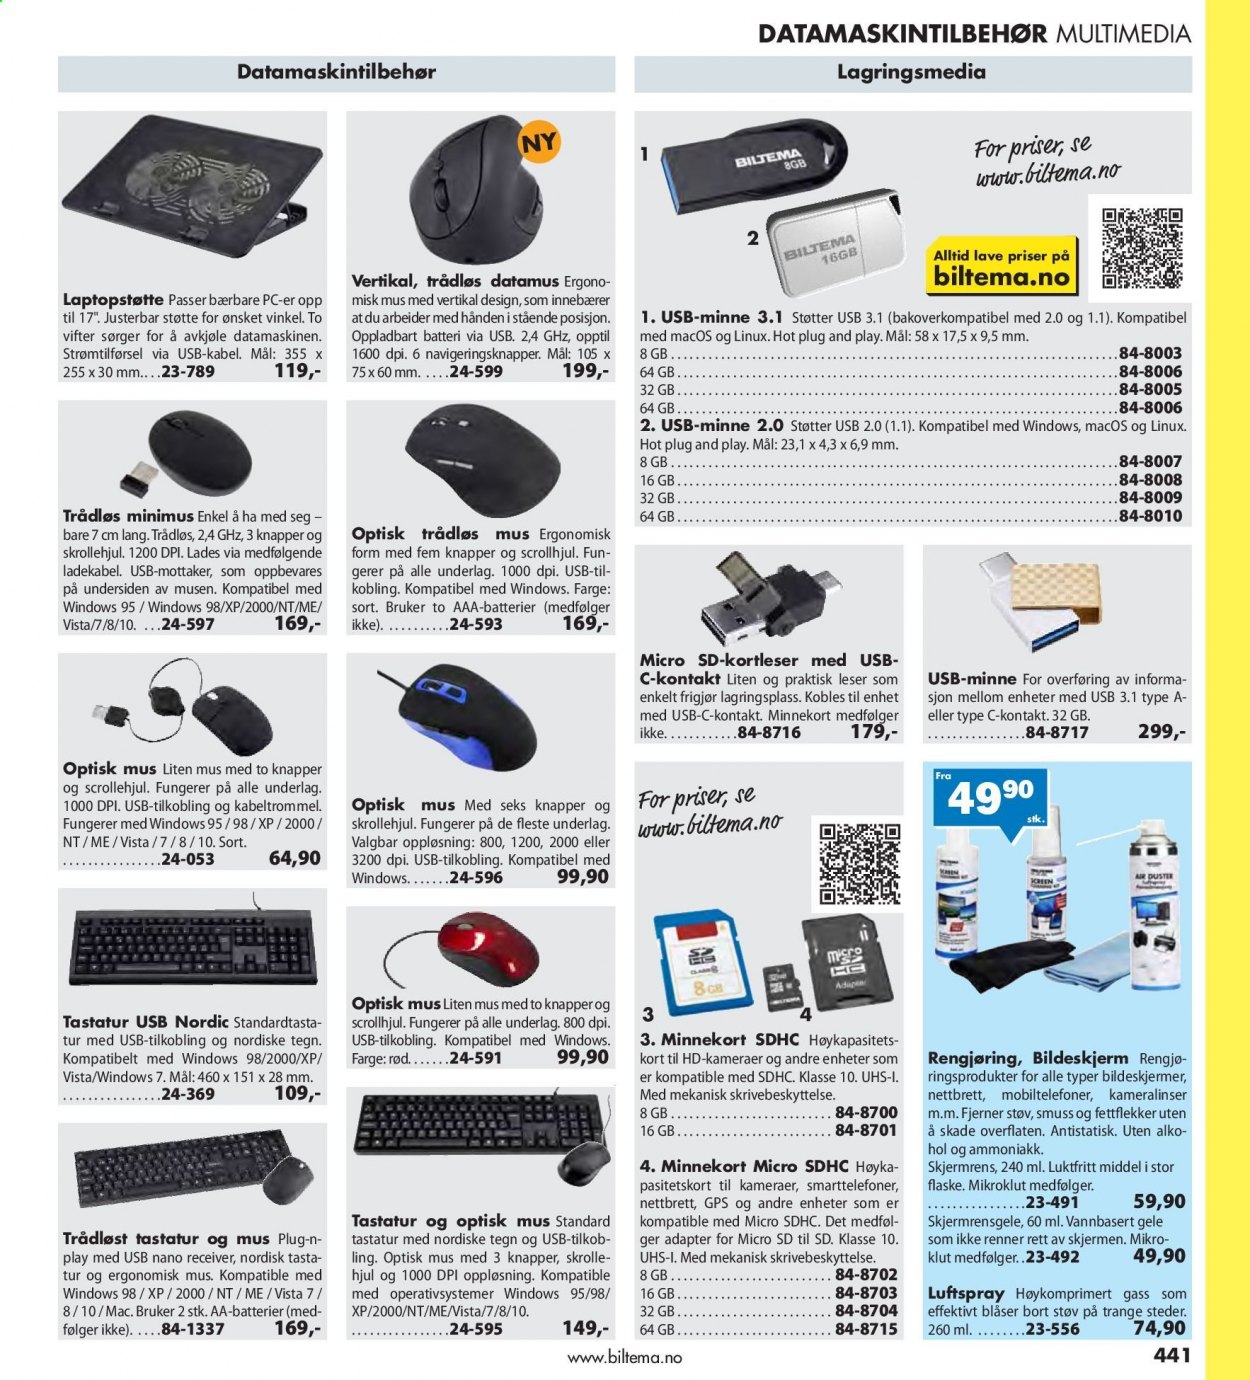 thumbnail - Kundeavis Biltema - Produkter fra tilbudsaviser - minnekort, datamus, tastatur, GPS. Side 441.